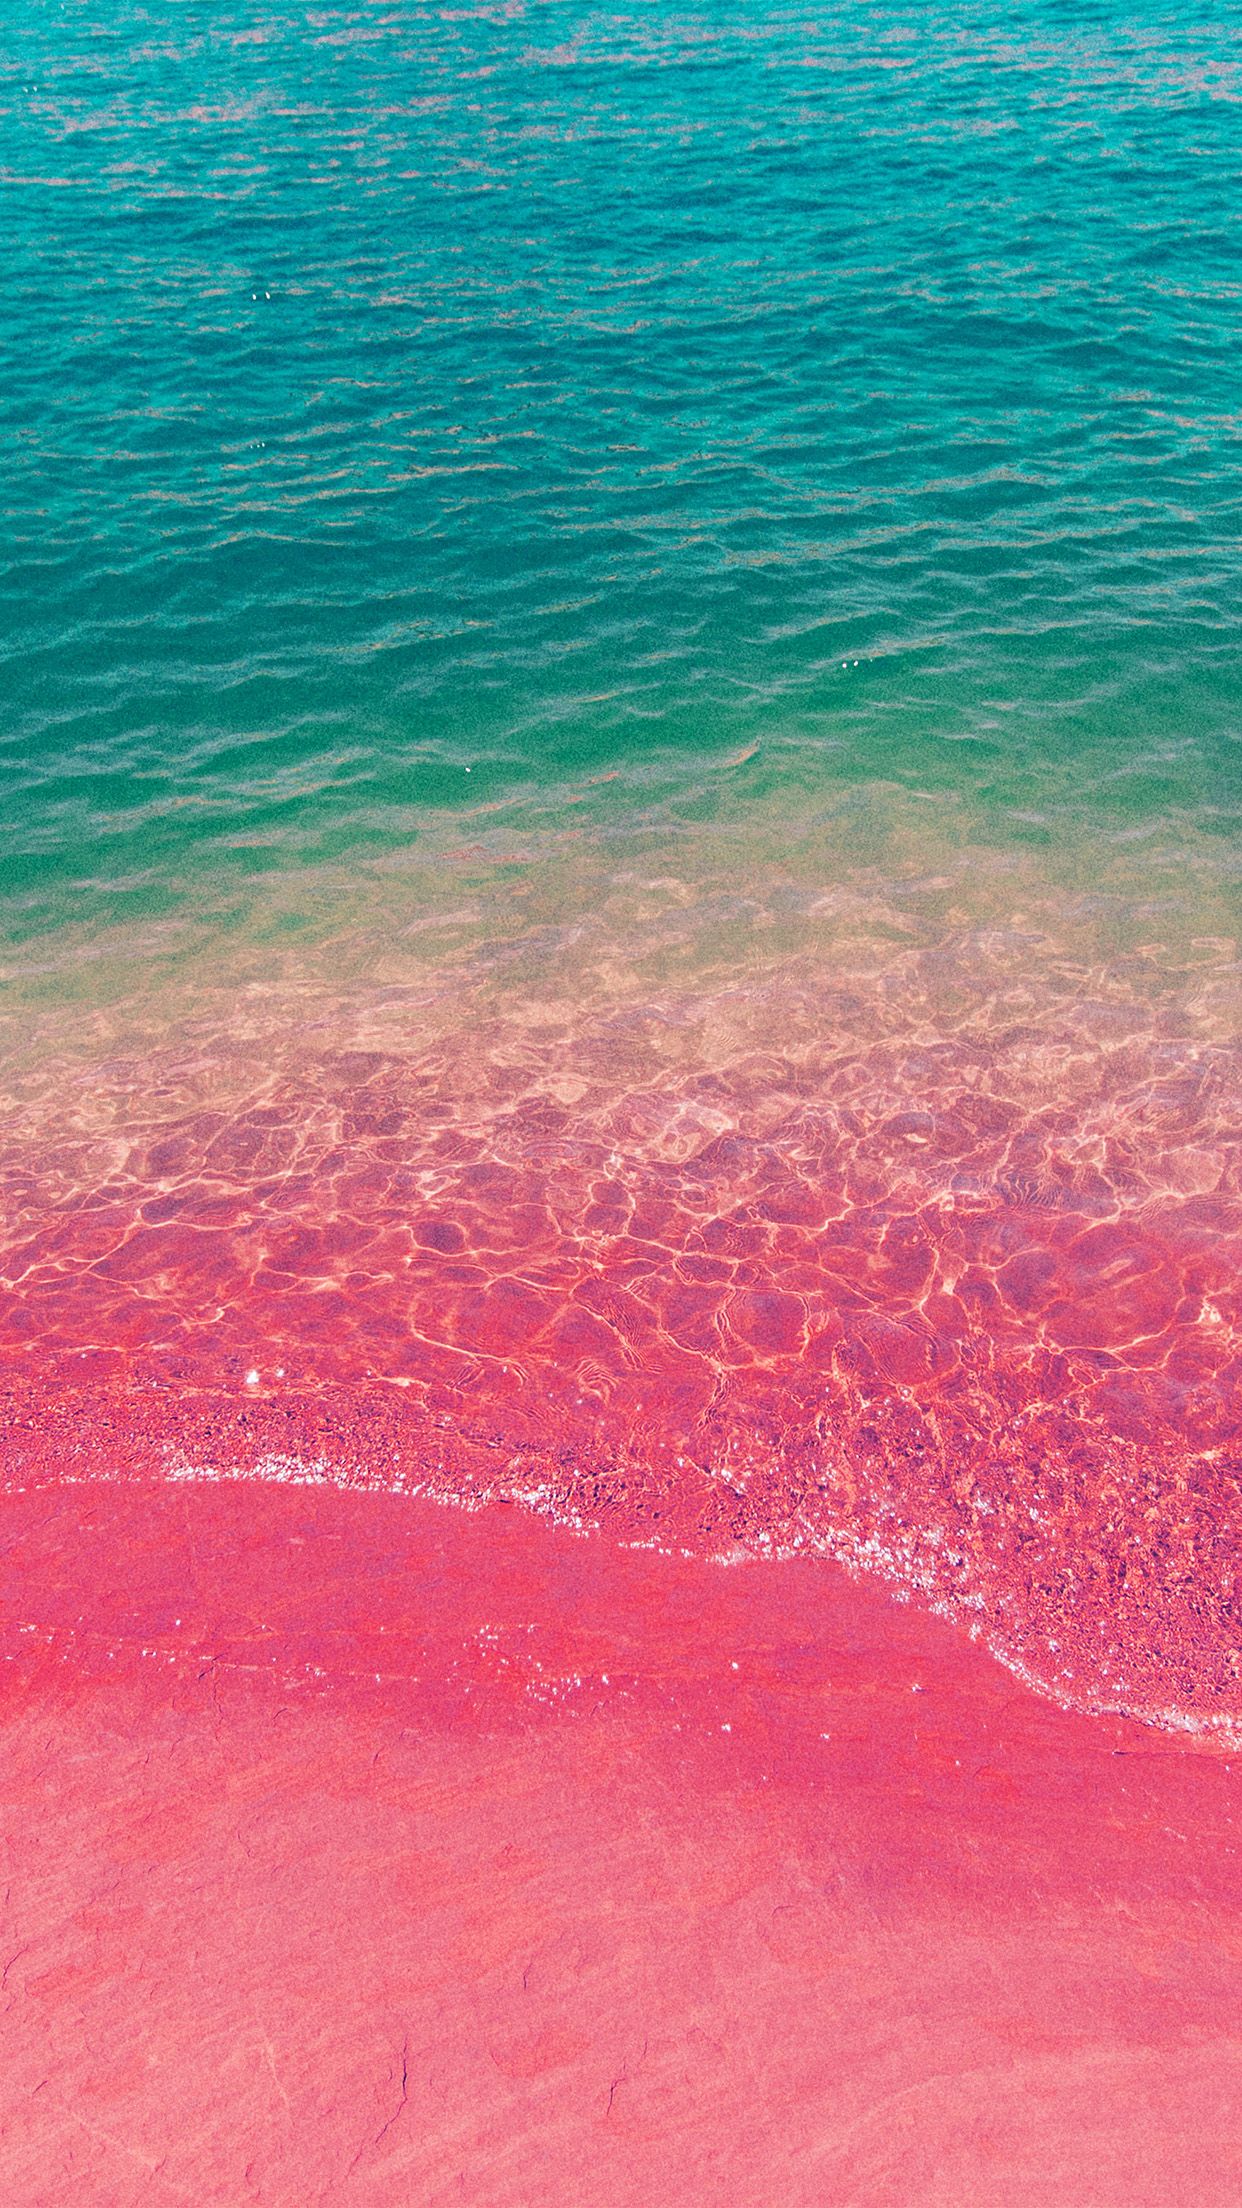 iPhone X wallpaper. sea water beach summer nature pink